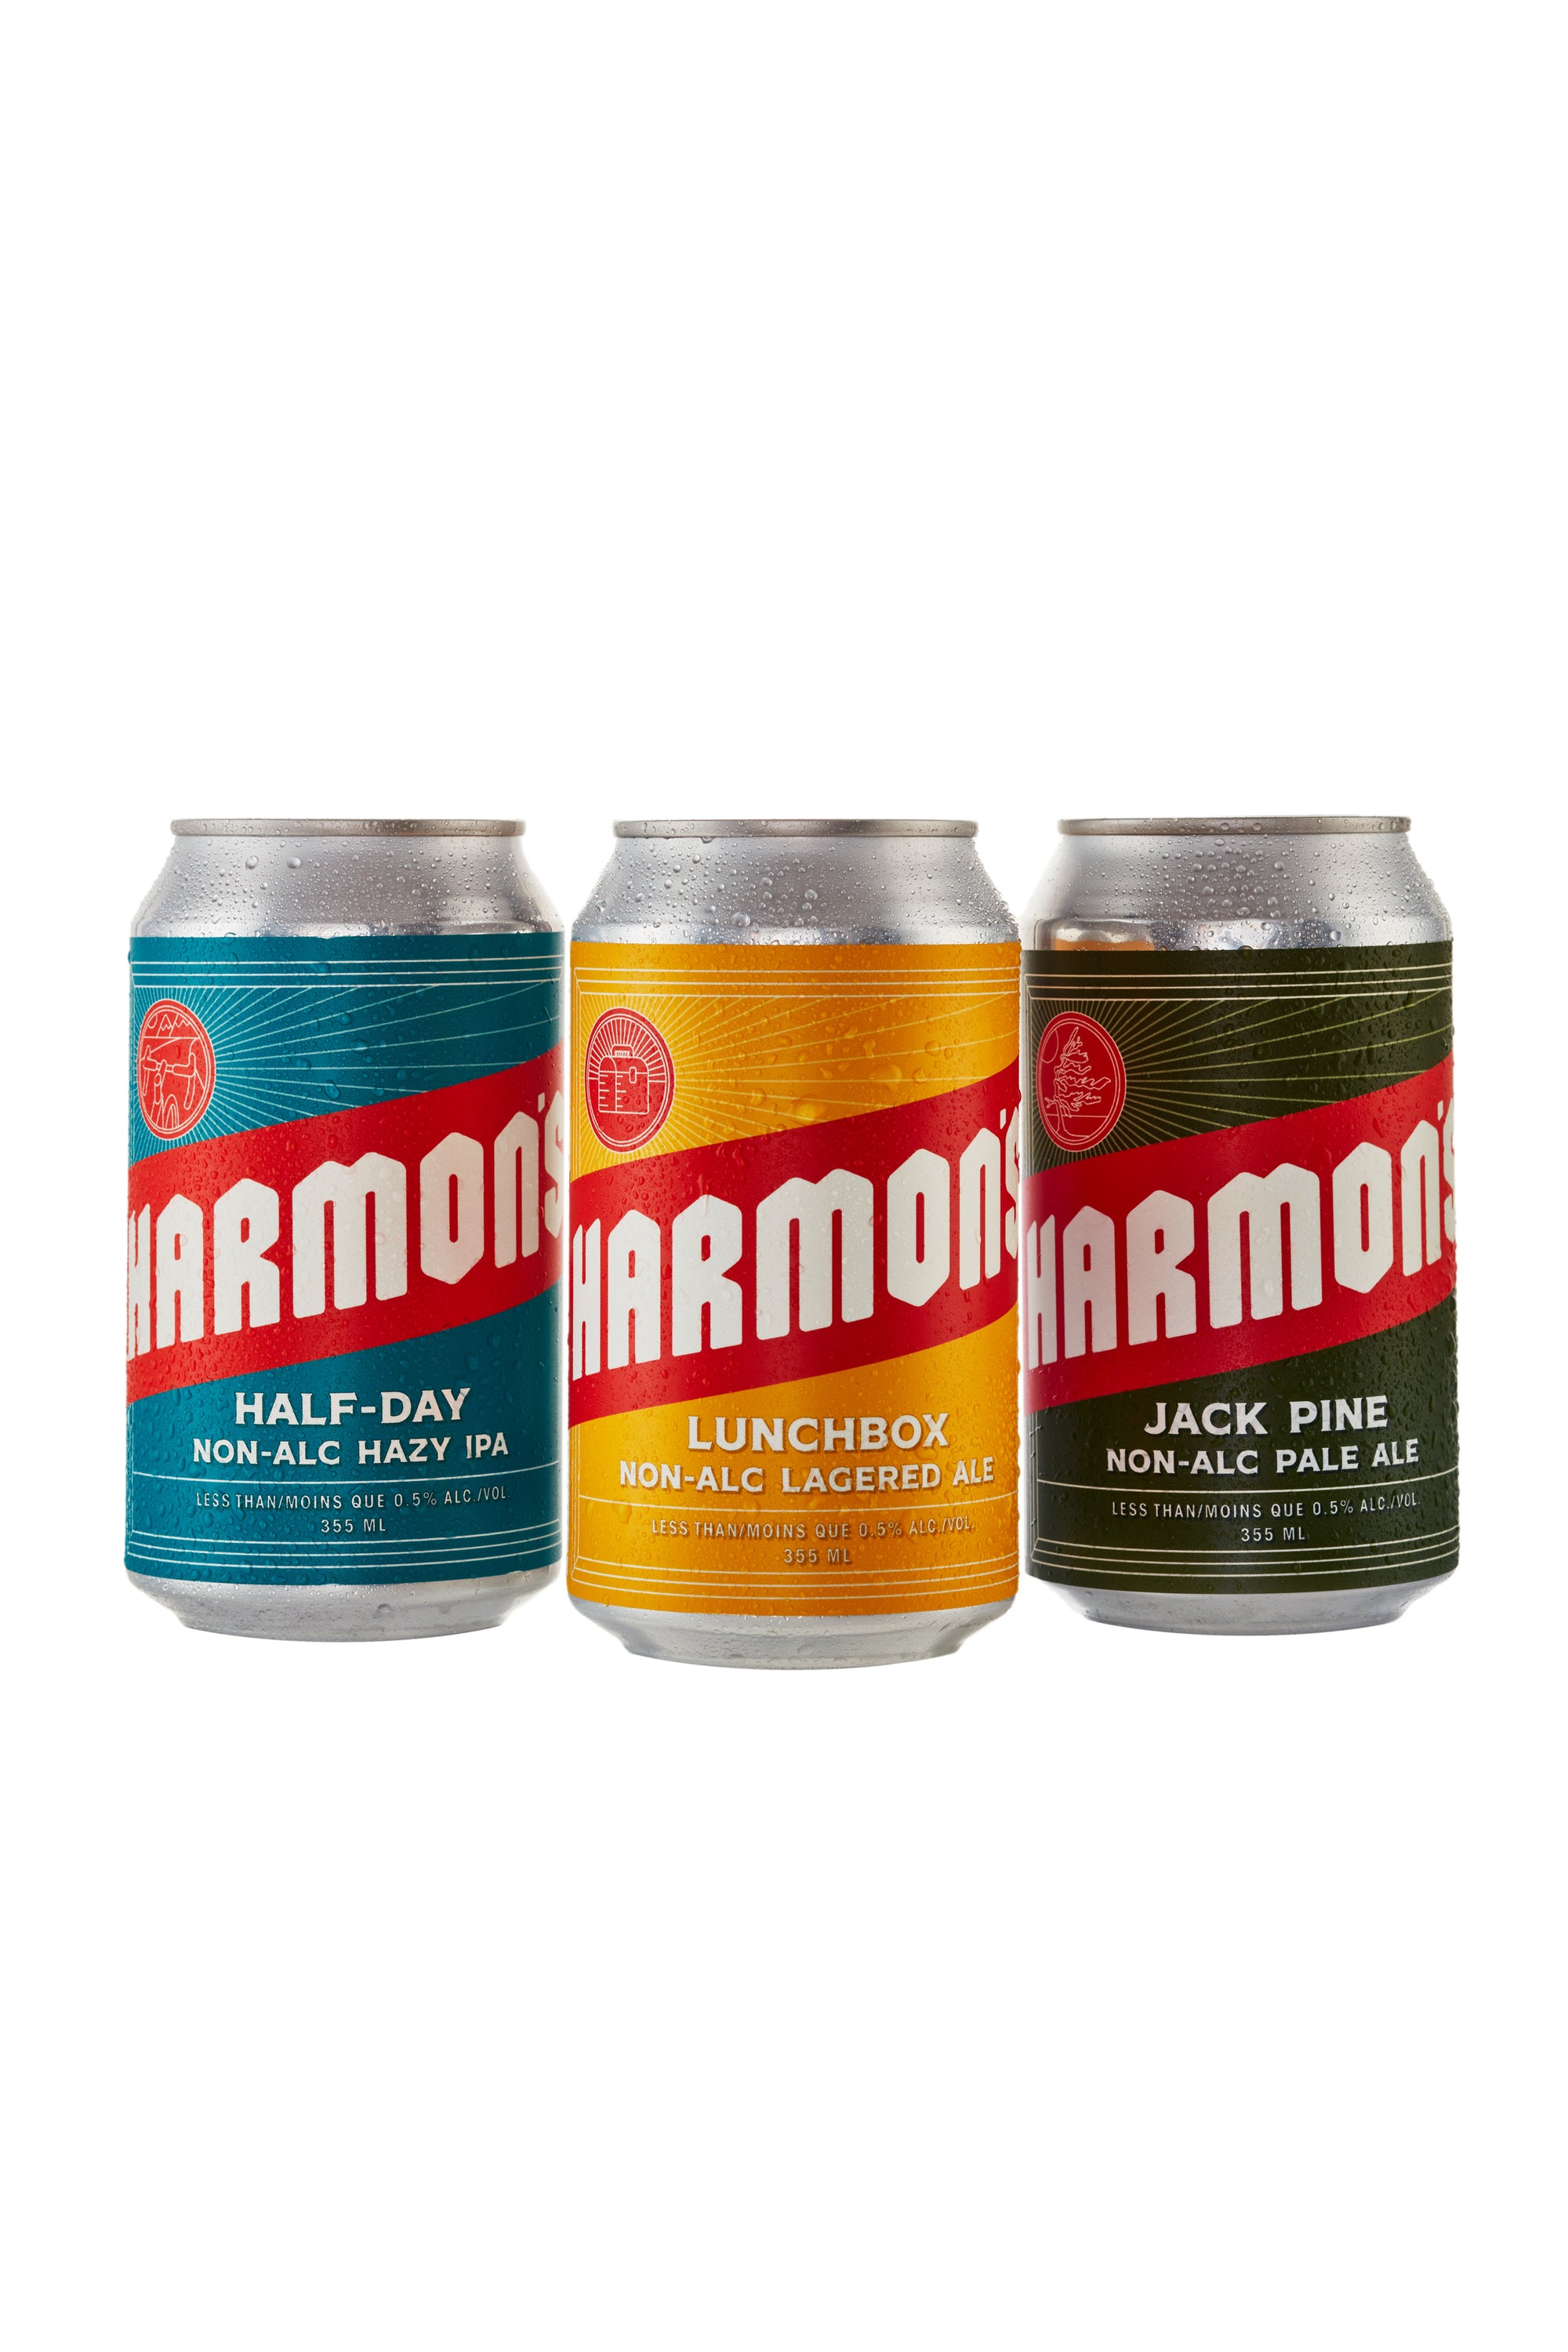 The Harmonium Blog - Official blog of Harmon's Non-Alcoholic Craft Brewing